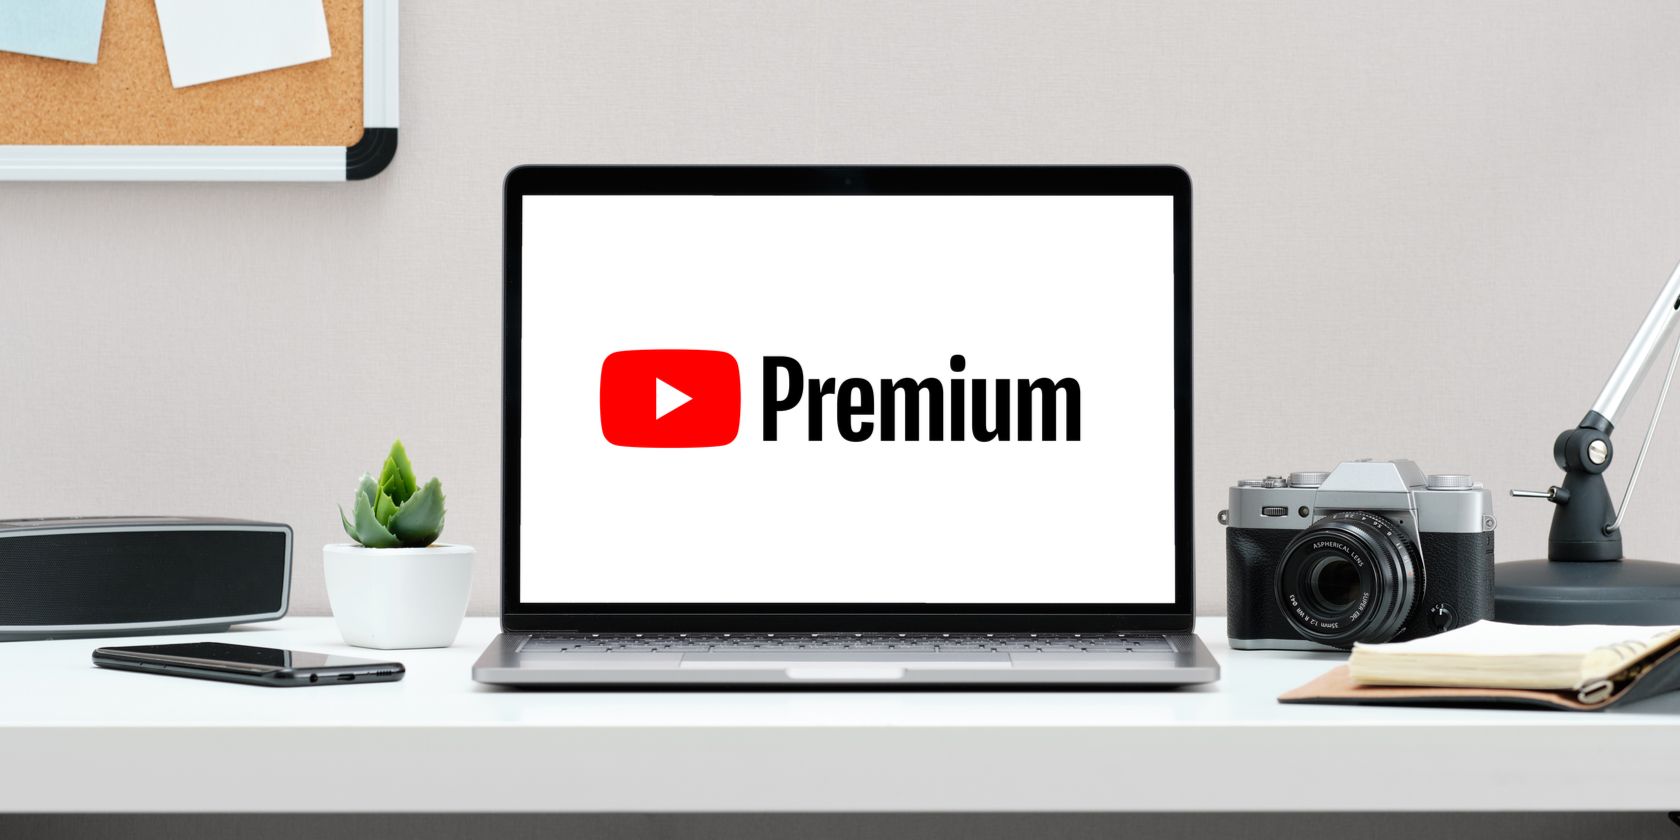 YouTube Premium logo on laptop